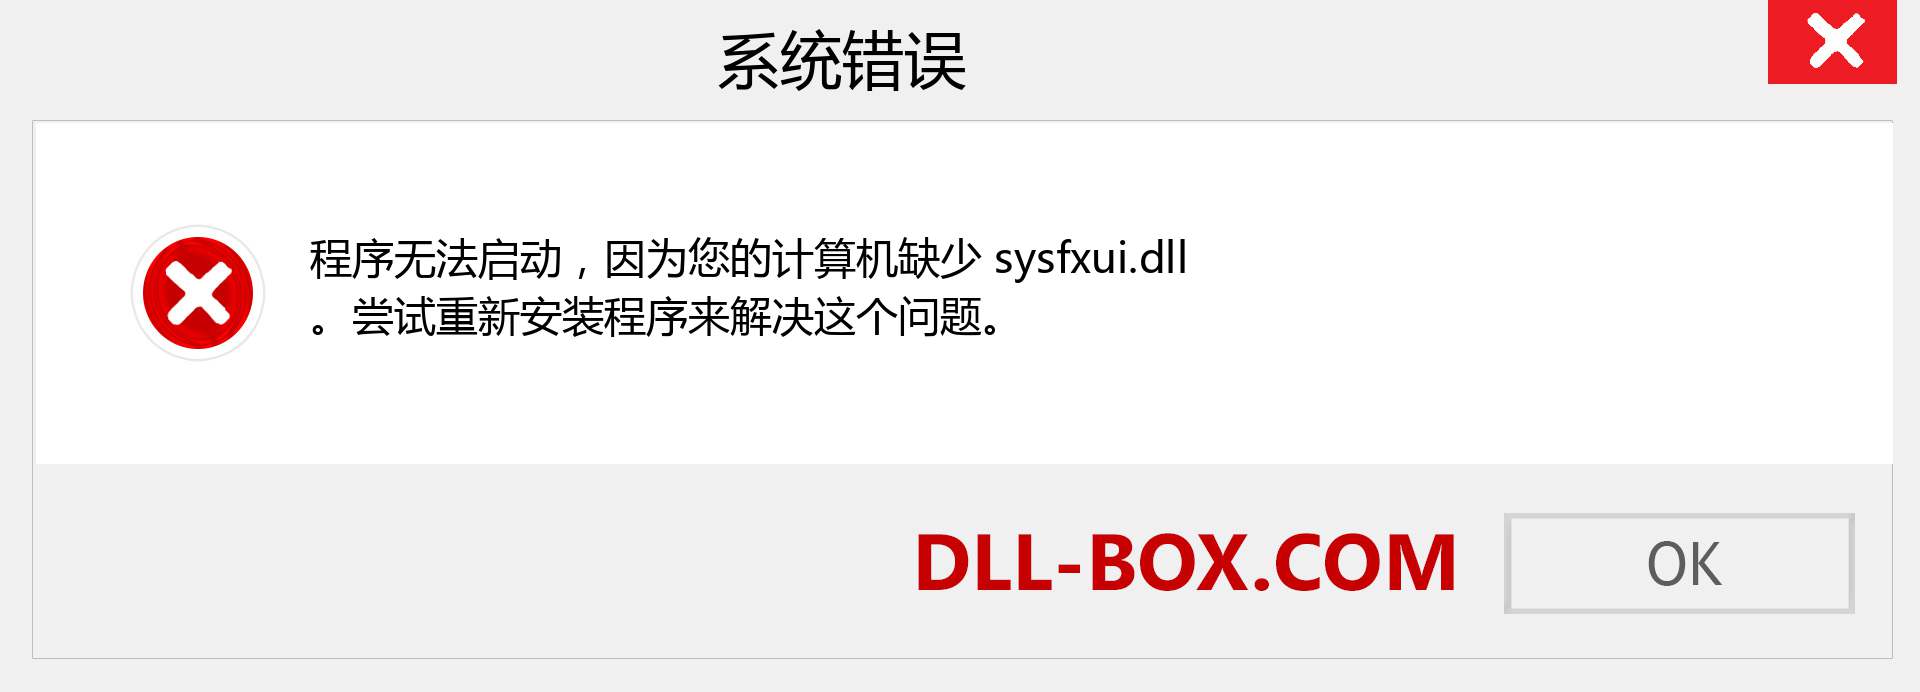 sysfxui.dll 文件丢失？。 适用于 Windows 7、8、10 的下载 - 修复 Windows、照片、图像上的 sysfxui dll 丢失错误